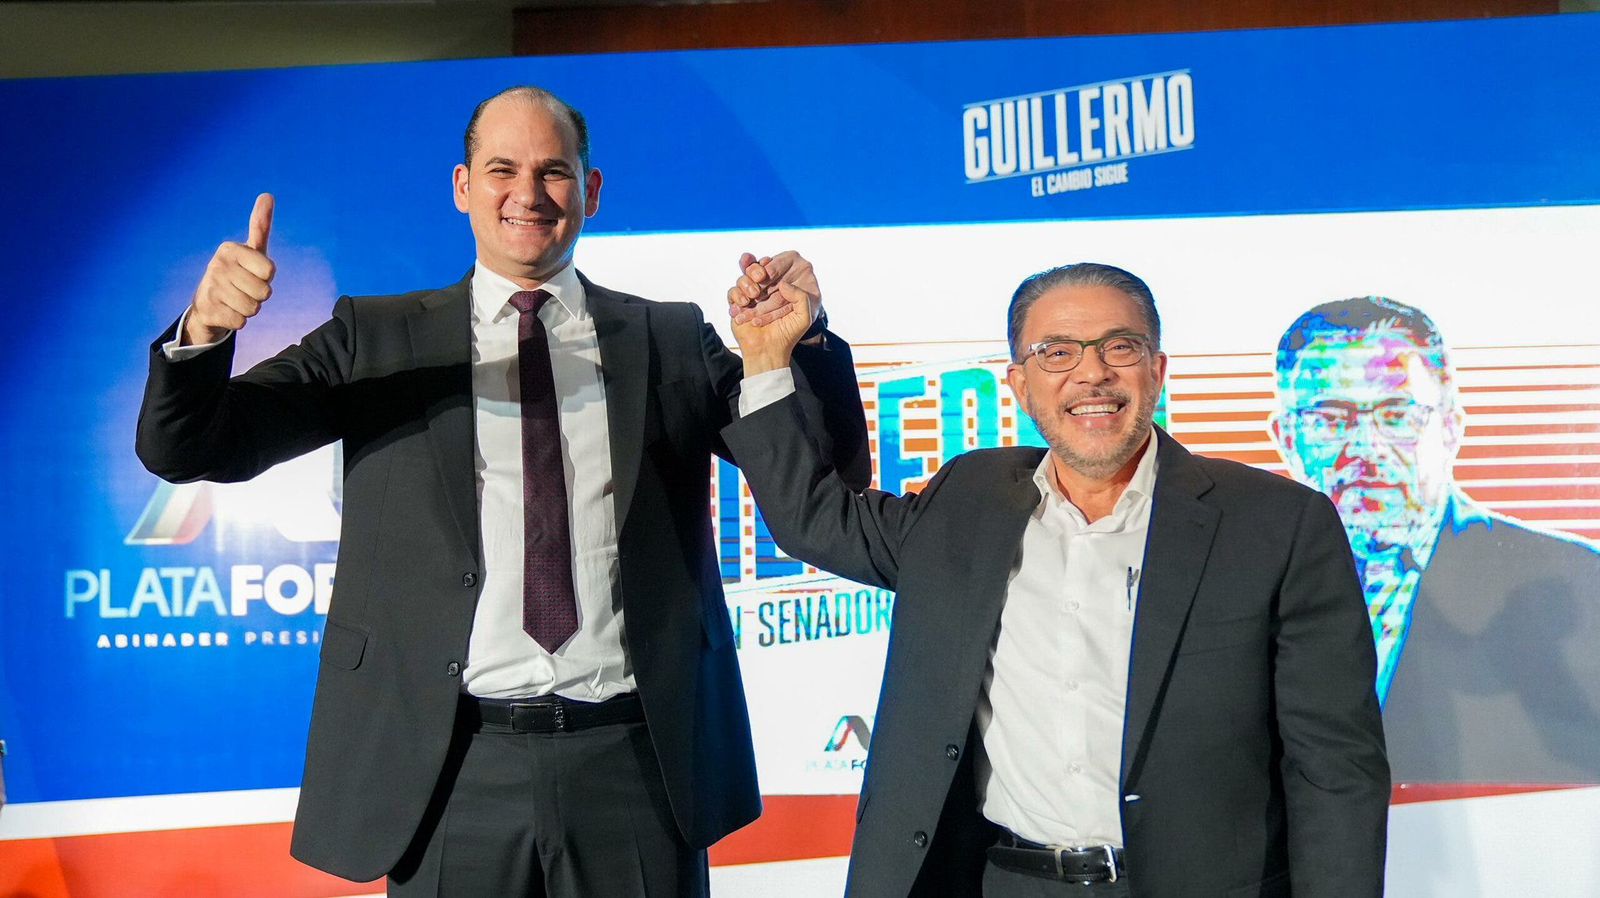 Plataforma AP anuncia respaldo a Guillermo Moreno en aspiraciones a la senaduría del DN